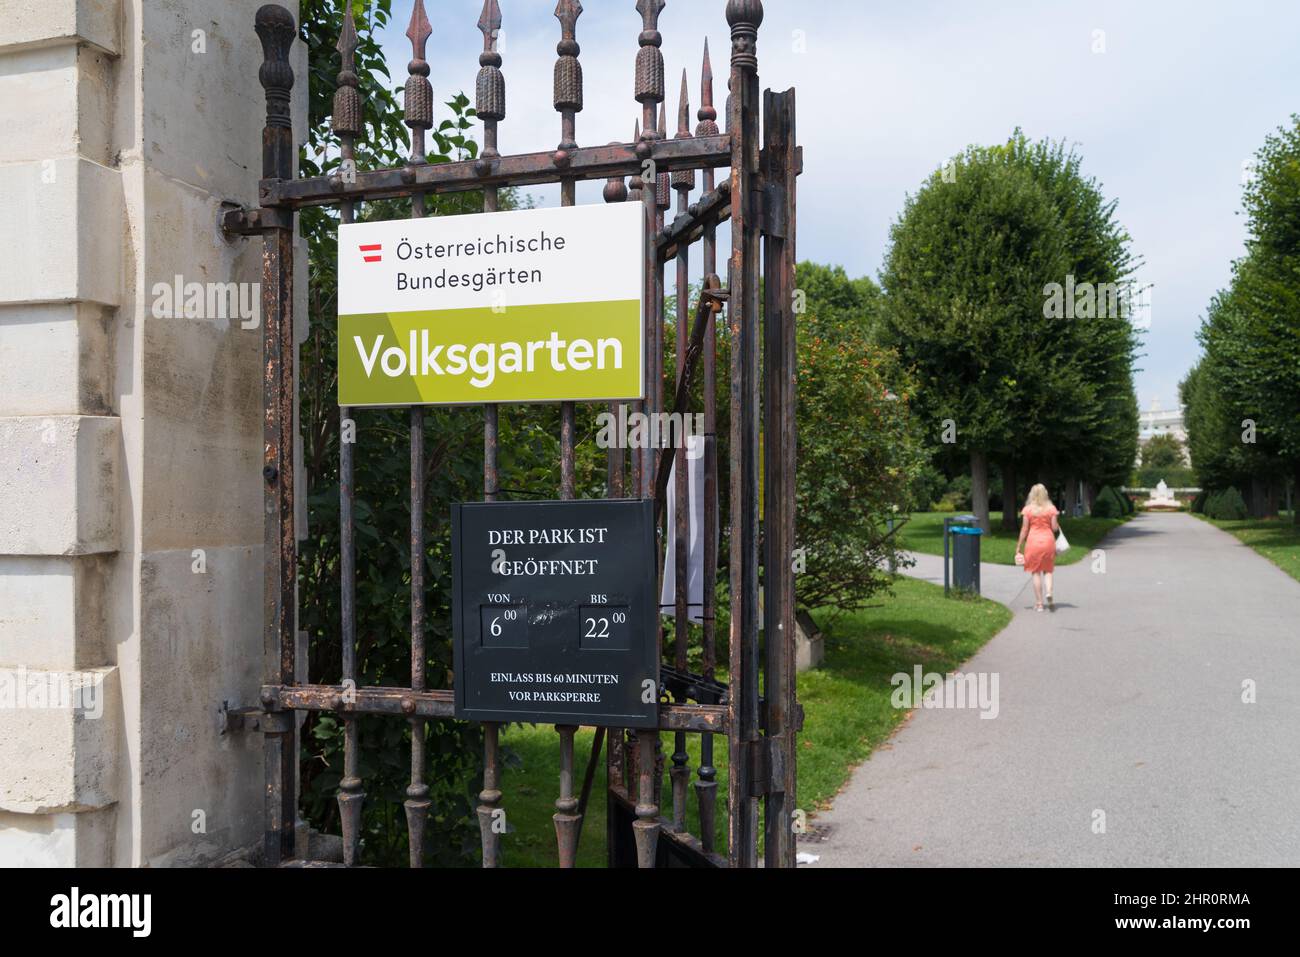 Volksgarten (ou le « jardin du peuple ») est l'un des plus beaux endroits publics en plein air de Vienne. Situé dans l'Innere Stadt, il a été construit au-dessus de la Th Banque D'Images